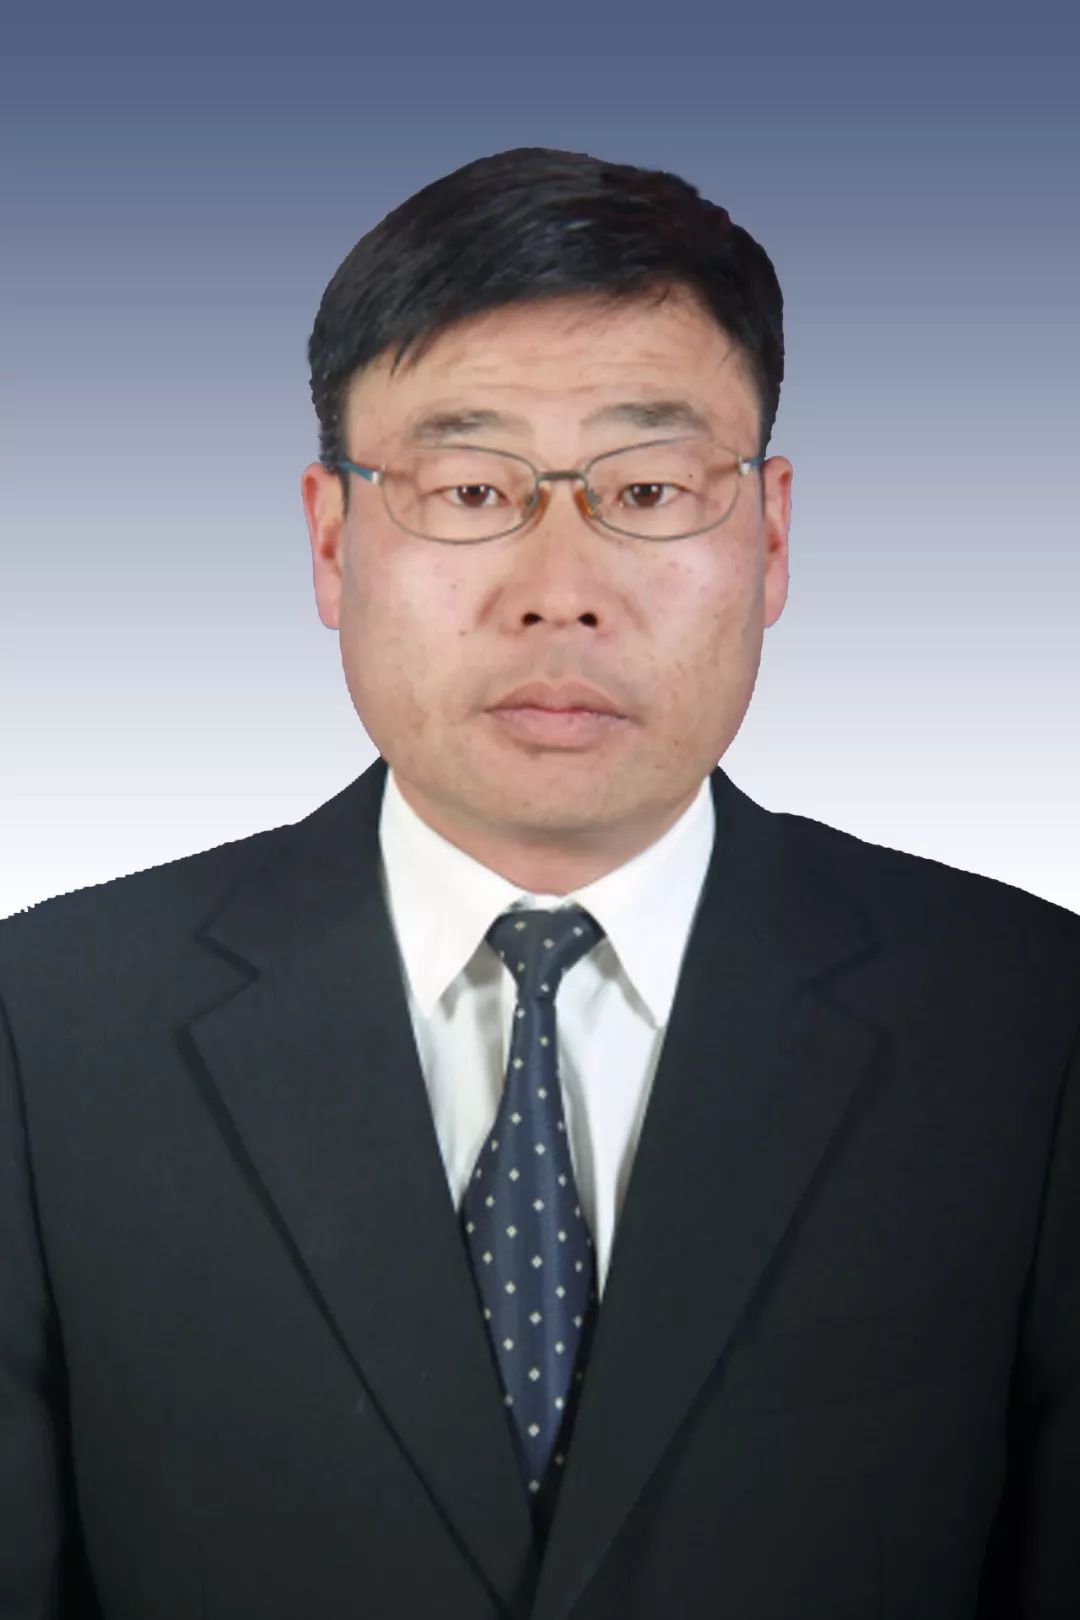 中共党员,1983年9月出生,2008年12月参加工作,现任通海县委组织部四级